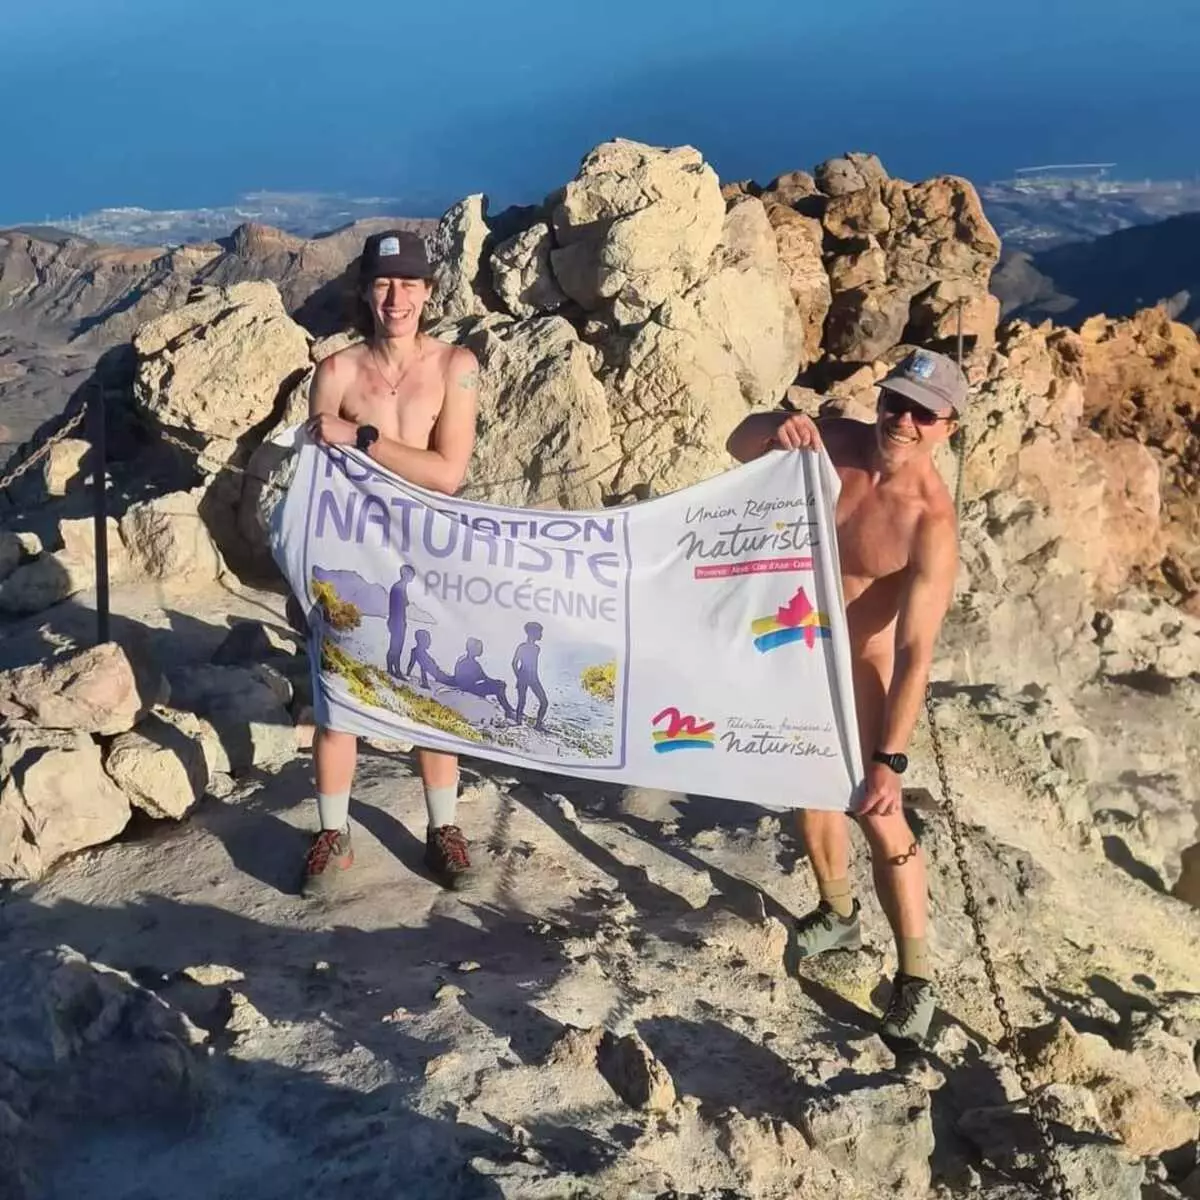 Dos hombres suben hasta el cráter del Teide y se quedan completamente desnudos